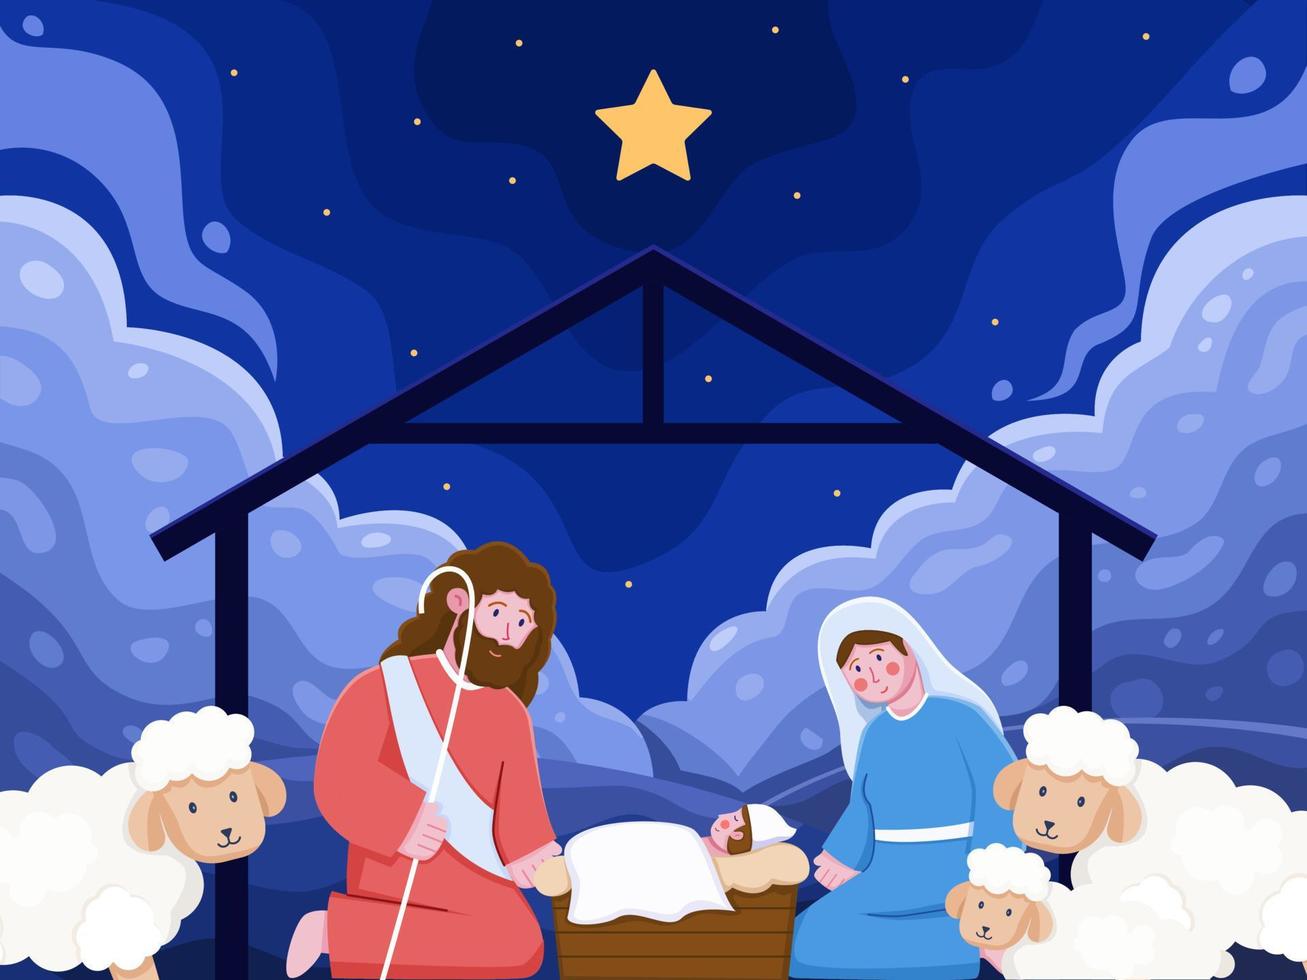 Cartoon Afbeelding Jezus Christus Geboren In Een Kribbe Met Jozef En Maria  Vergezeld En Schapen. Baby Jezus Geboren In Bethlehem Met Heldere Sterren.  Kan Gebruiken Voor Wenskaart, Briefkaart, Uitnodiging, Banner. 4795631 -